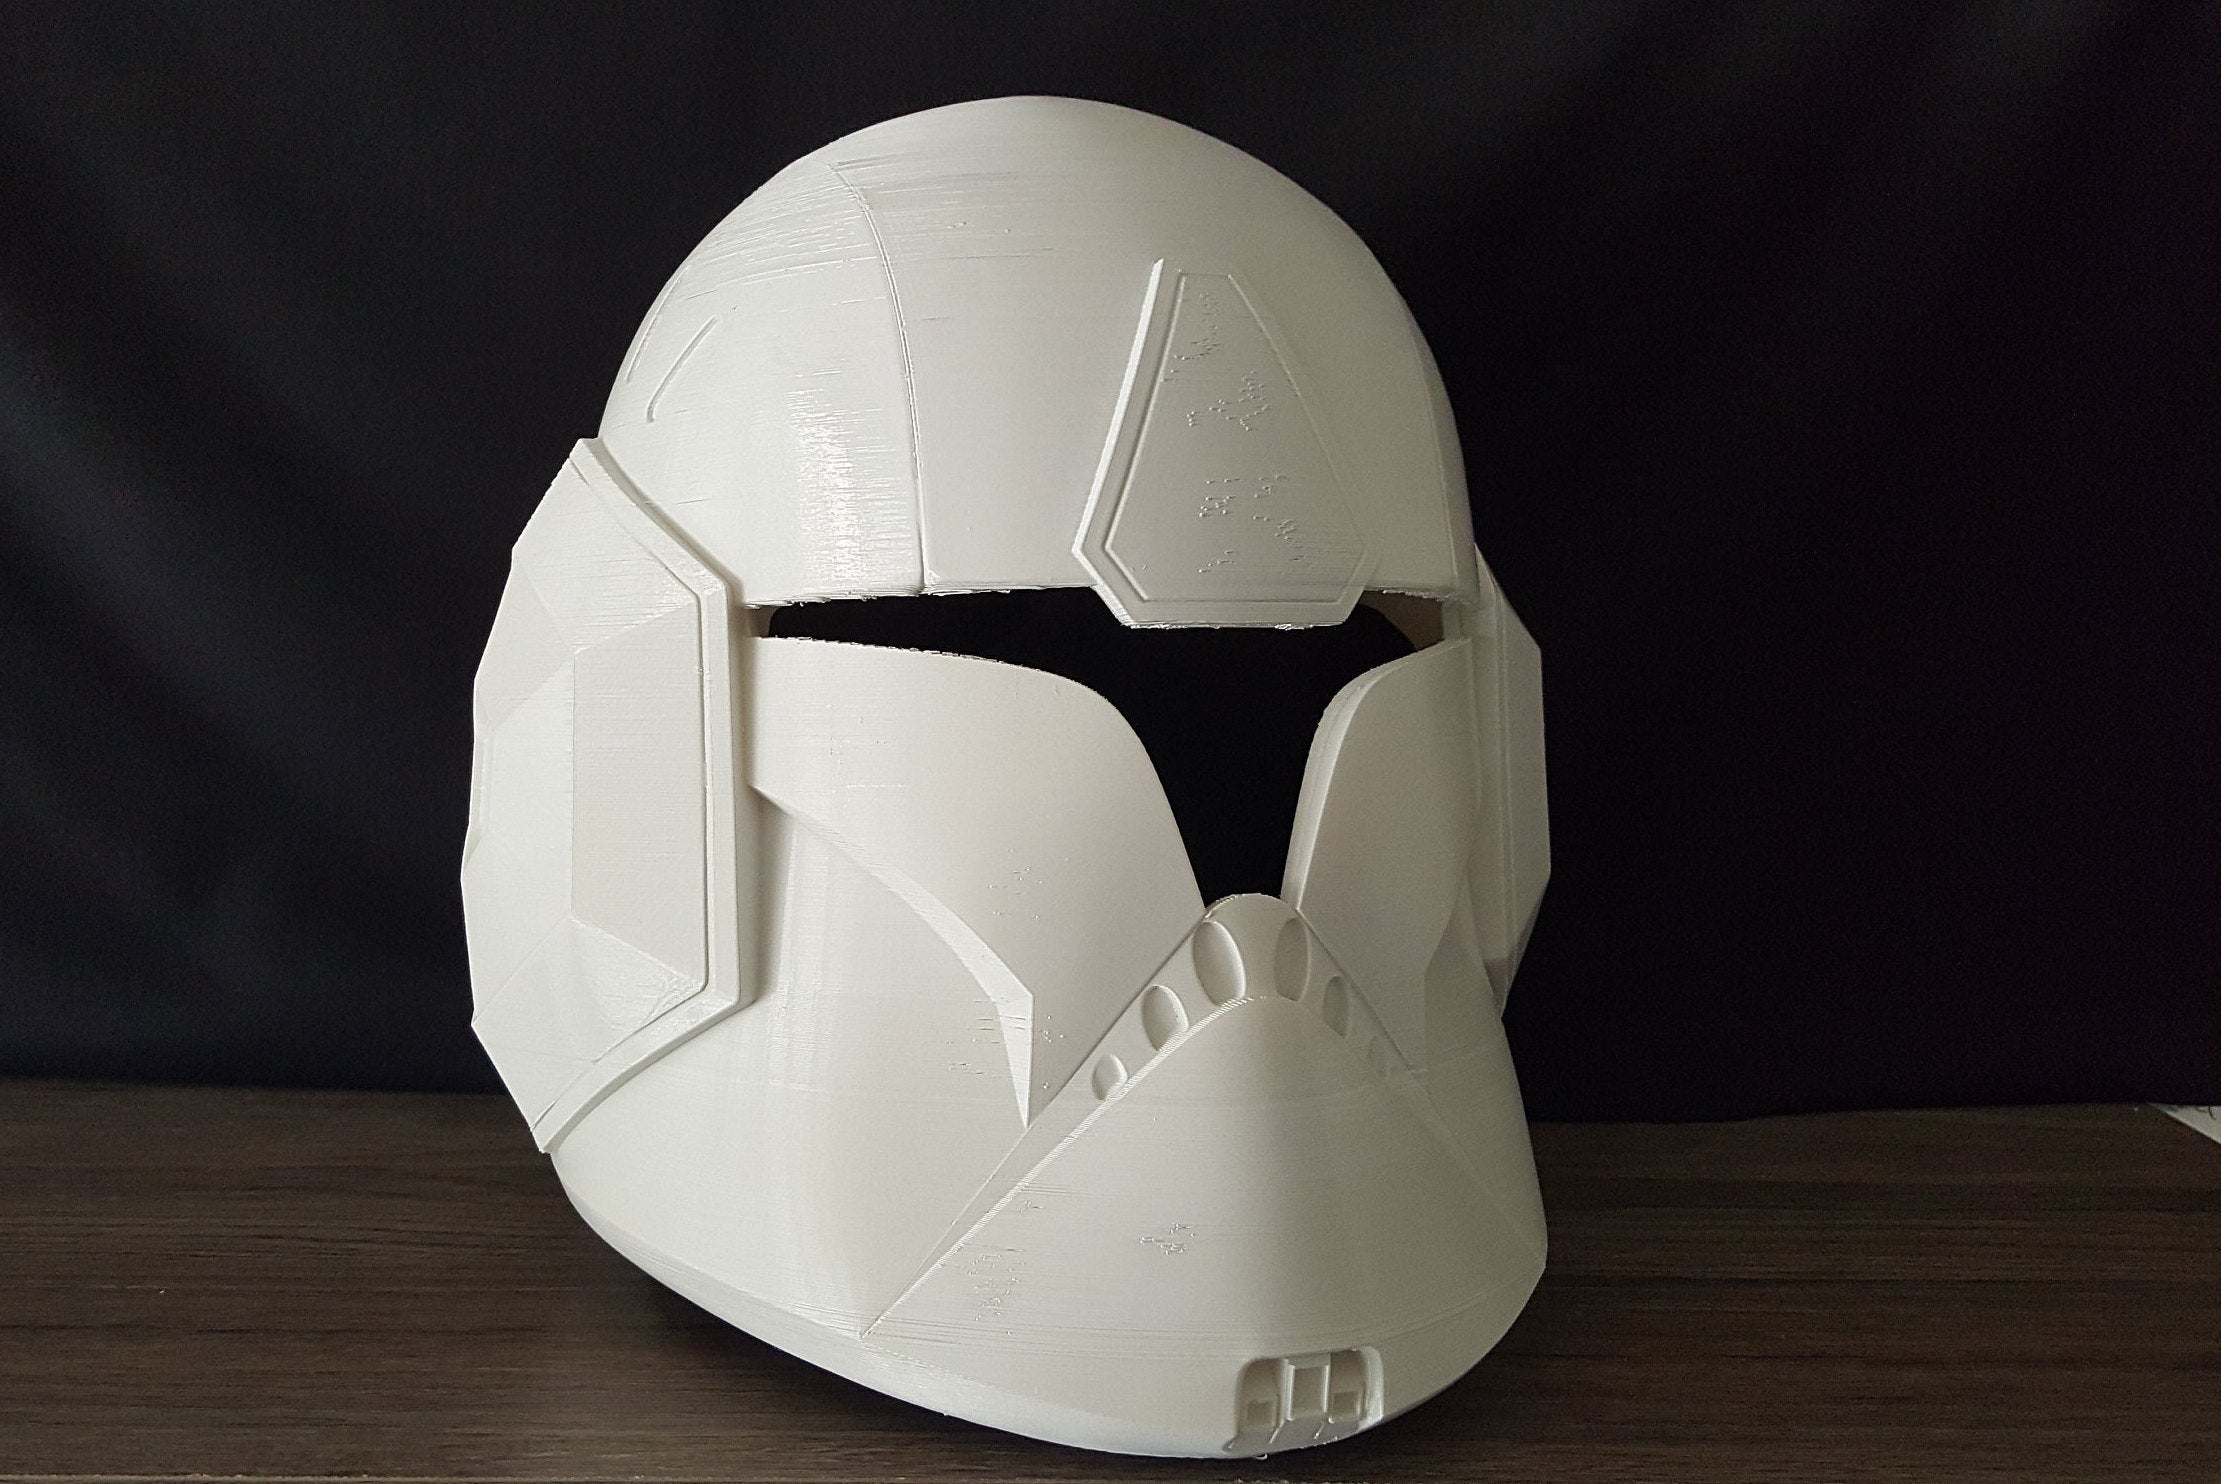 Spec Ops Clone Trooper Helmet - DIY - Galactic Armory